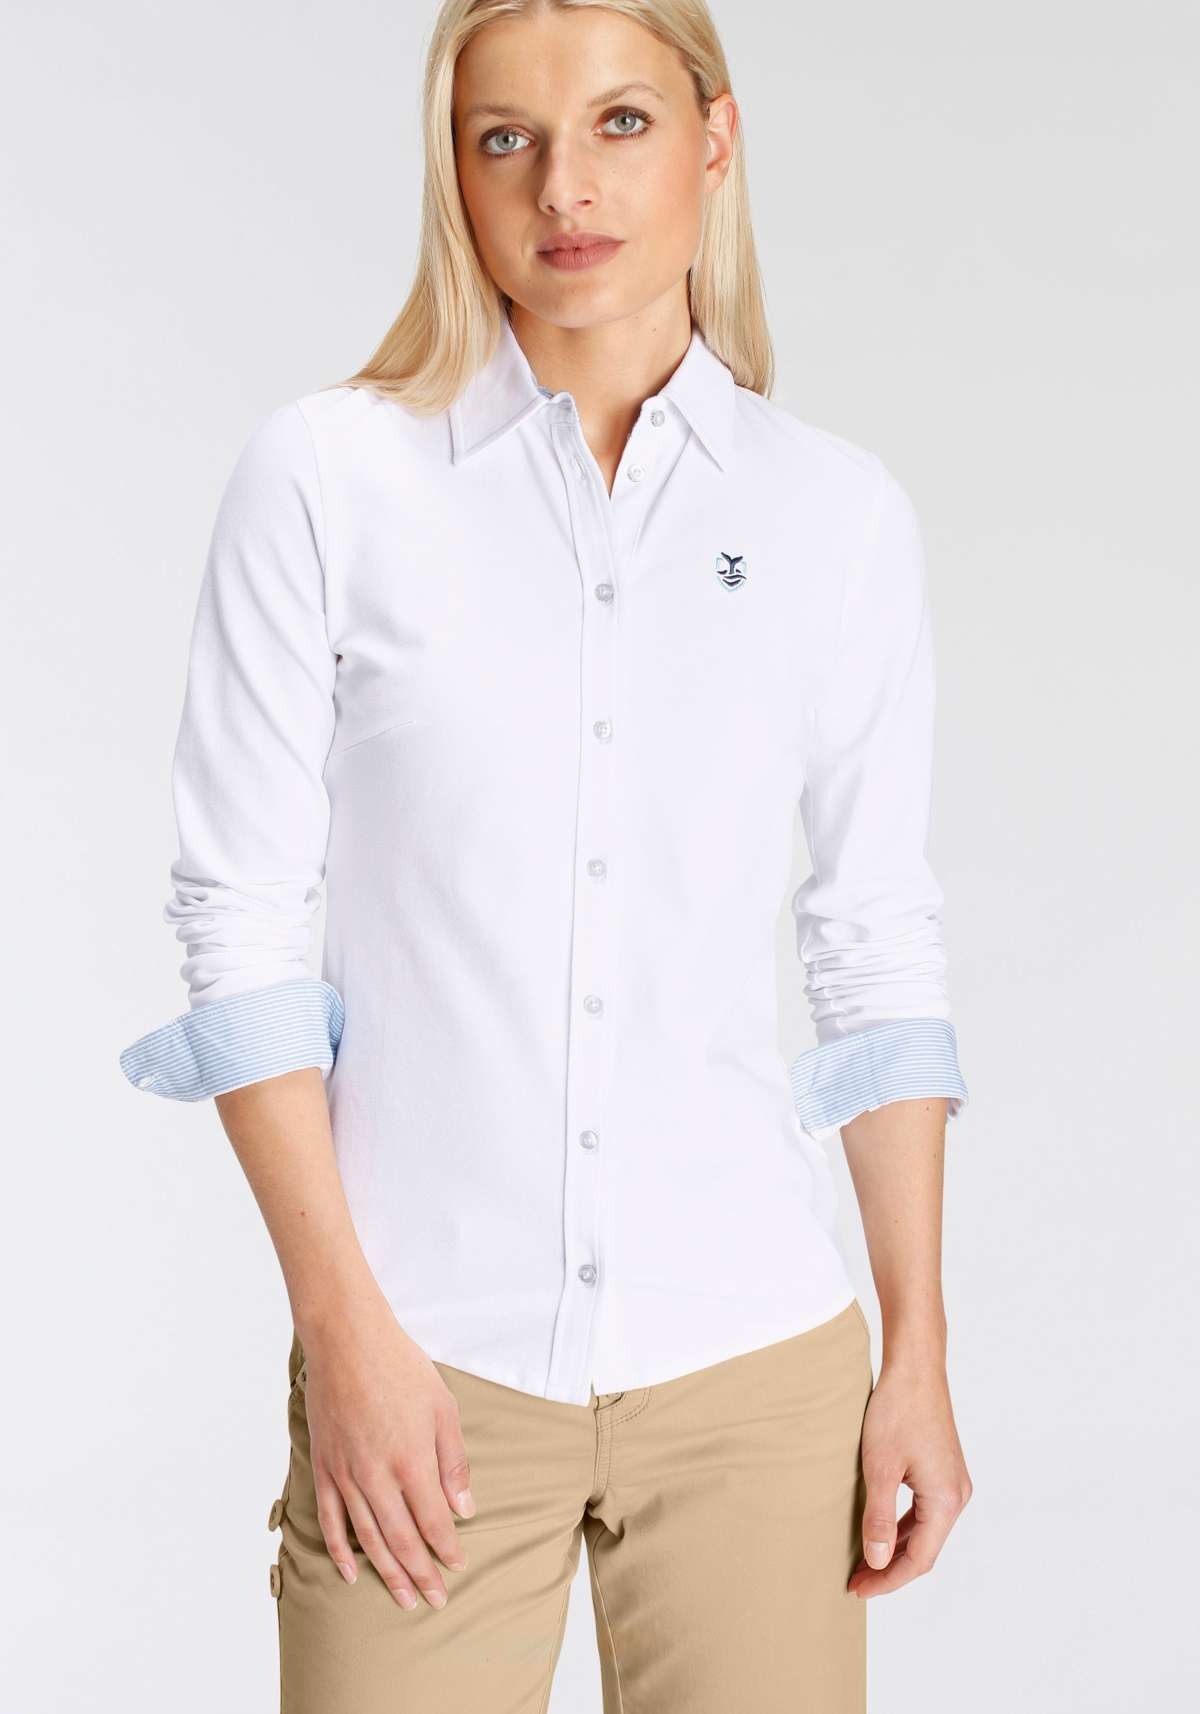 Блузка-рубашка с воротником-поло и контрастными деталями ---НОВЫЙ БРЕНД!